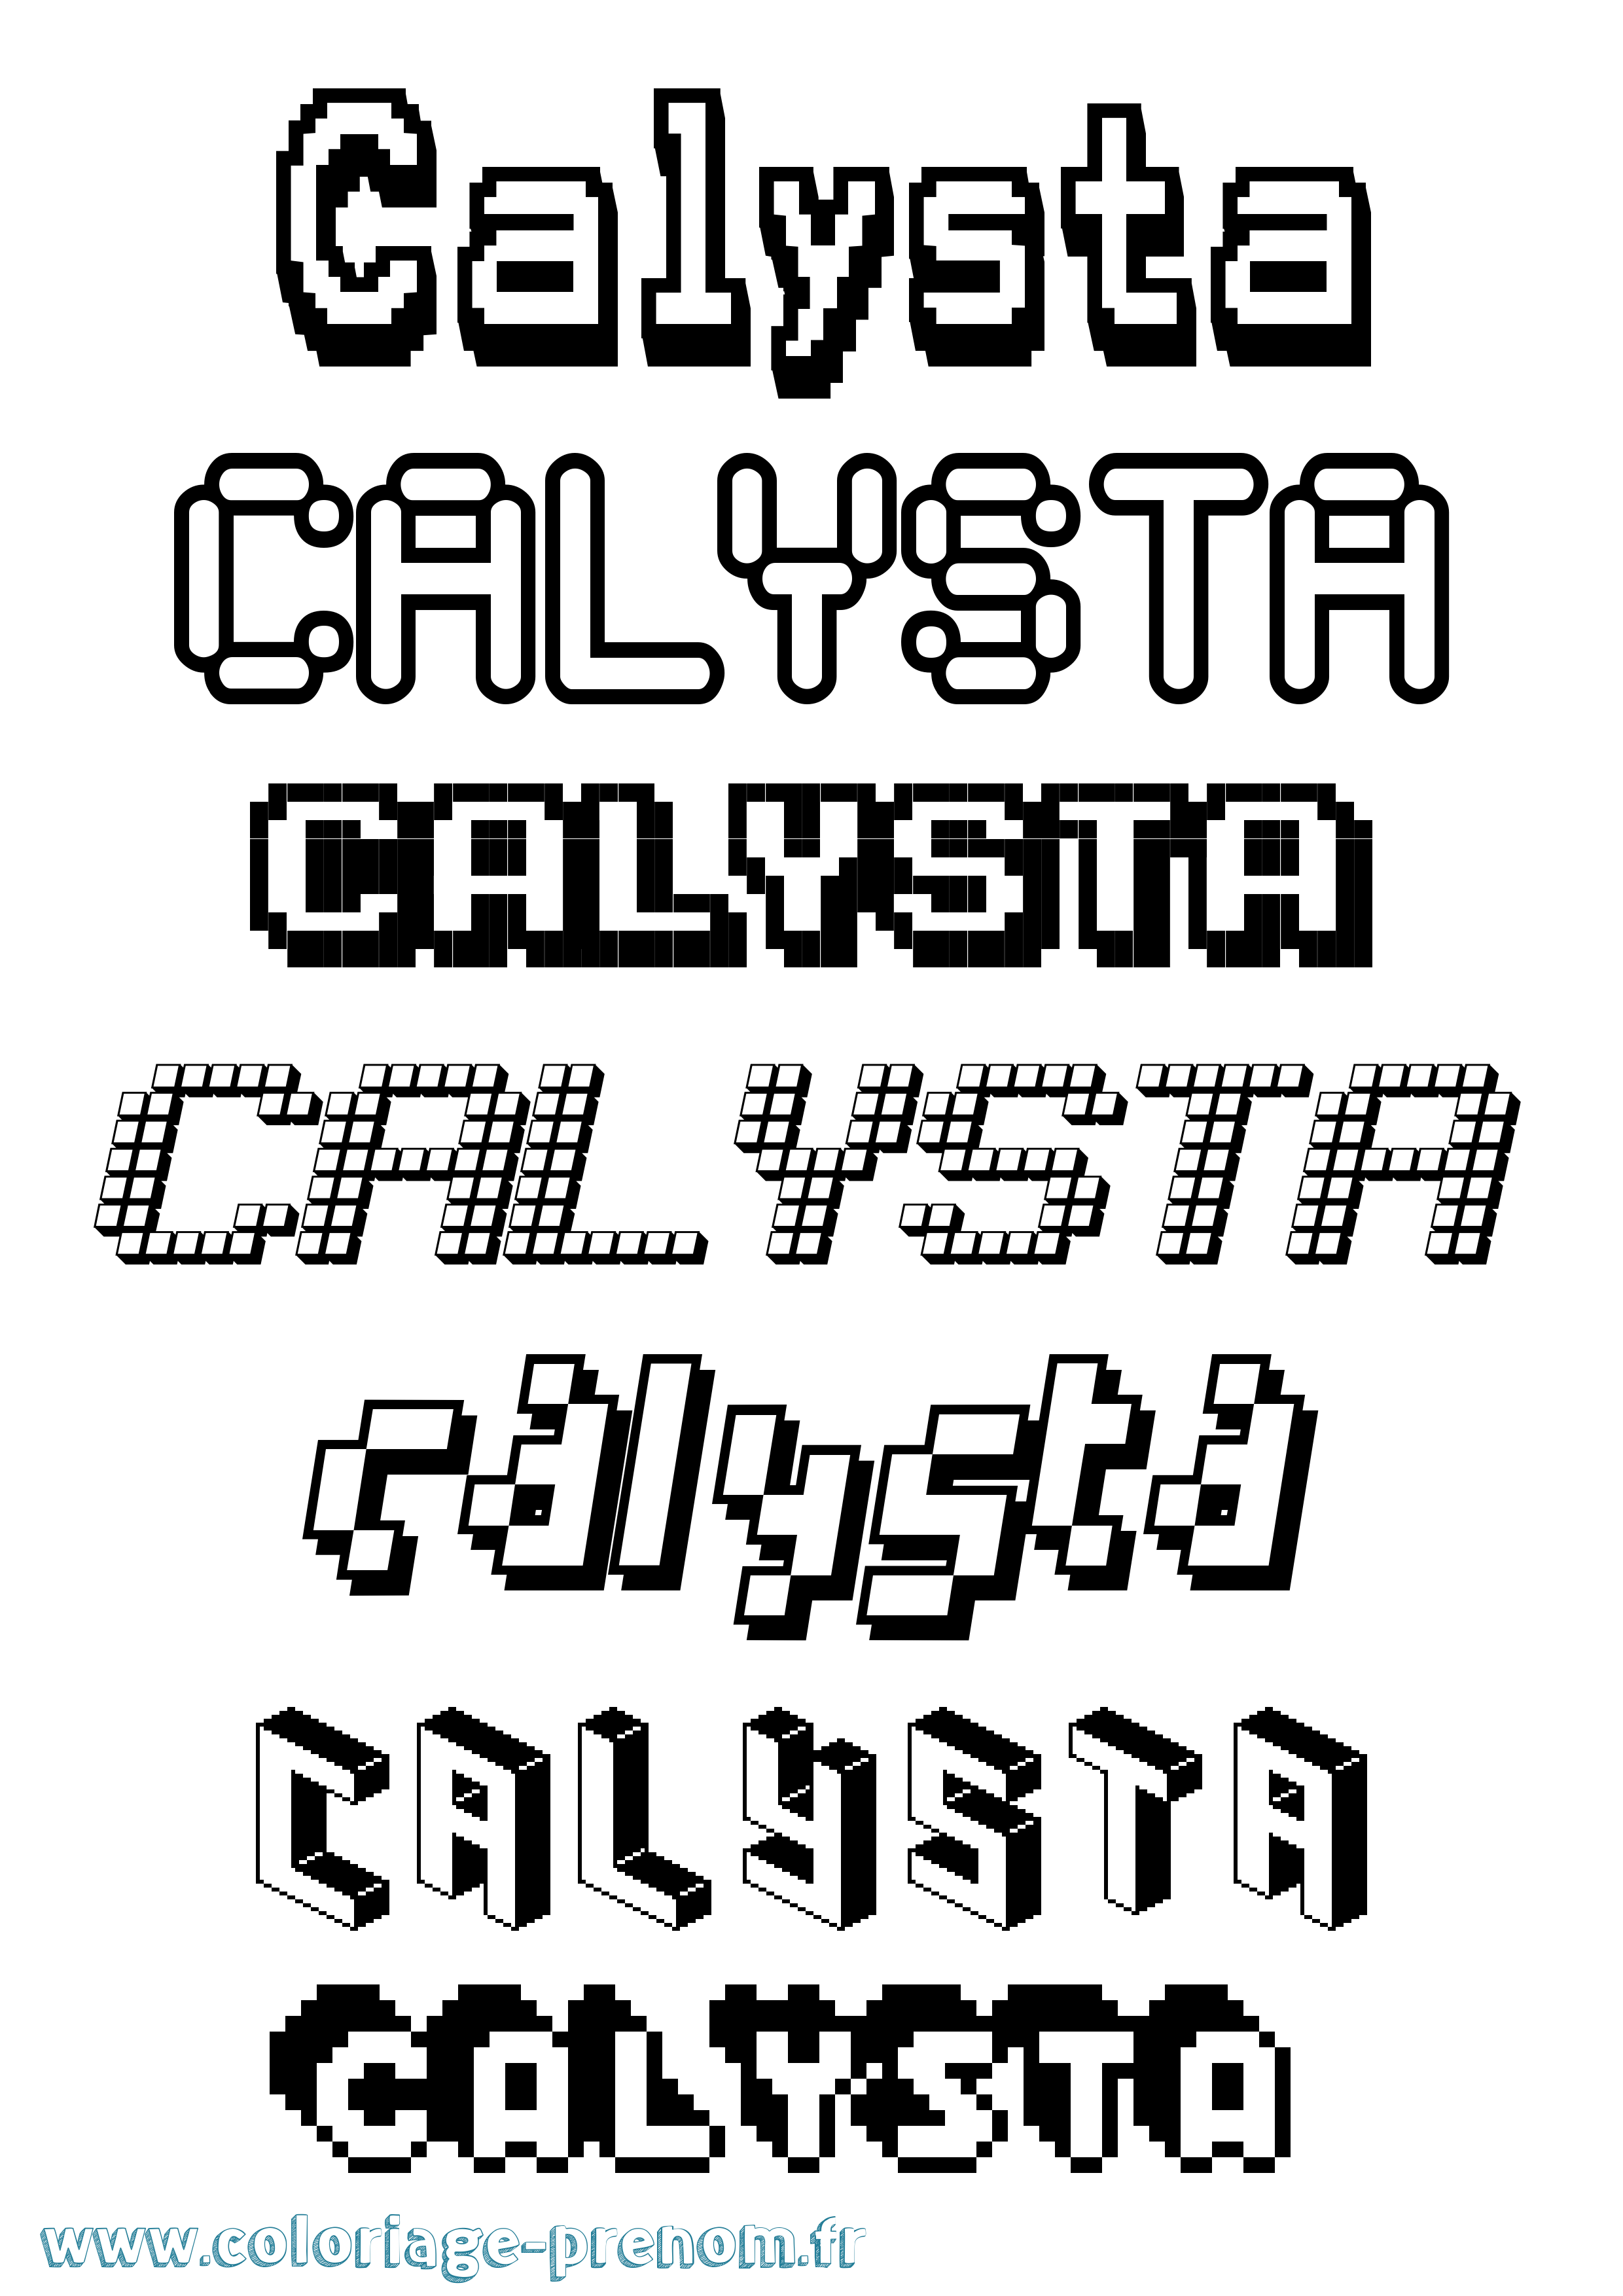 Coloriage prénom Calysta Pixel